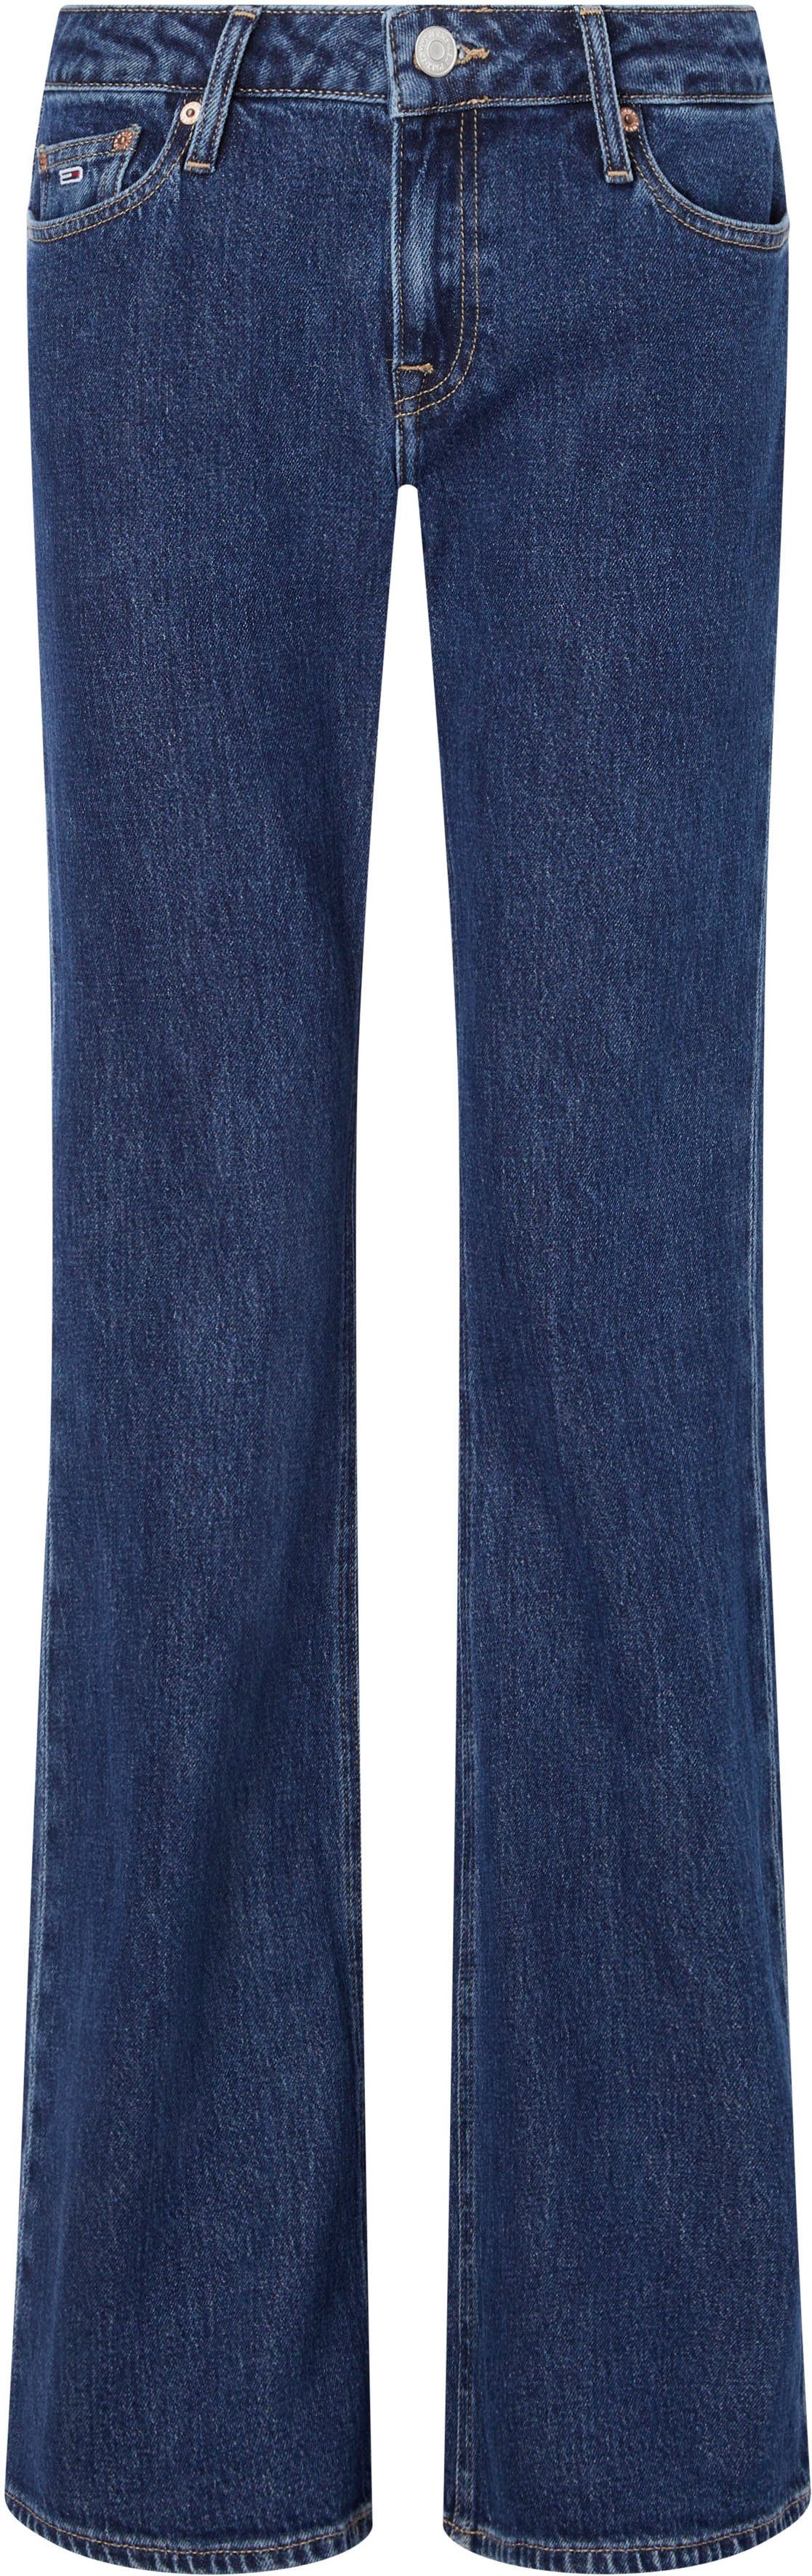 Jeans Logo-Badge Denim-Medium Tommy Tommy Bund mit Schlagjeans am Jeans